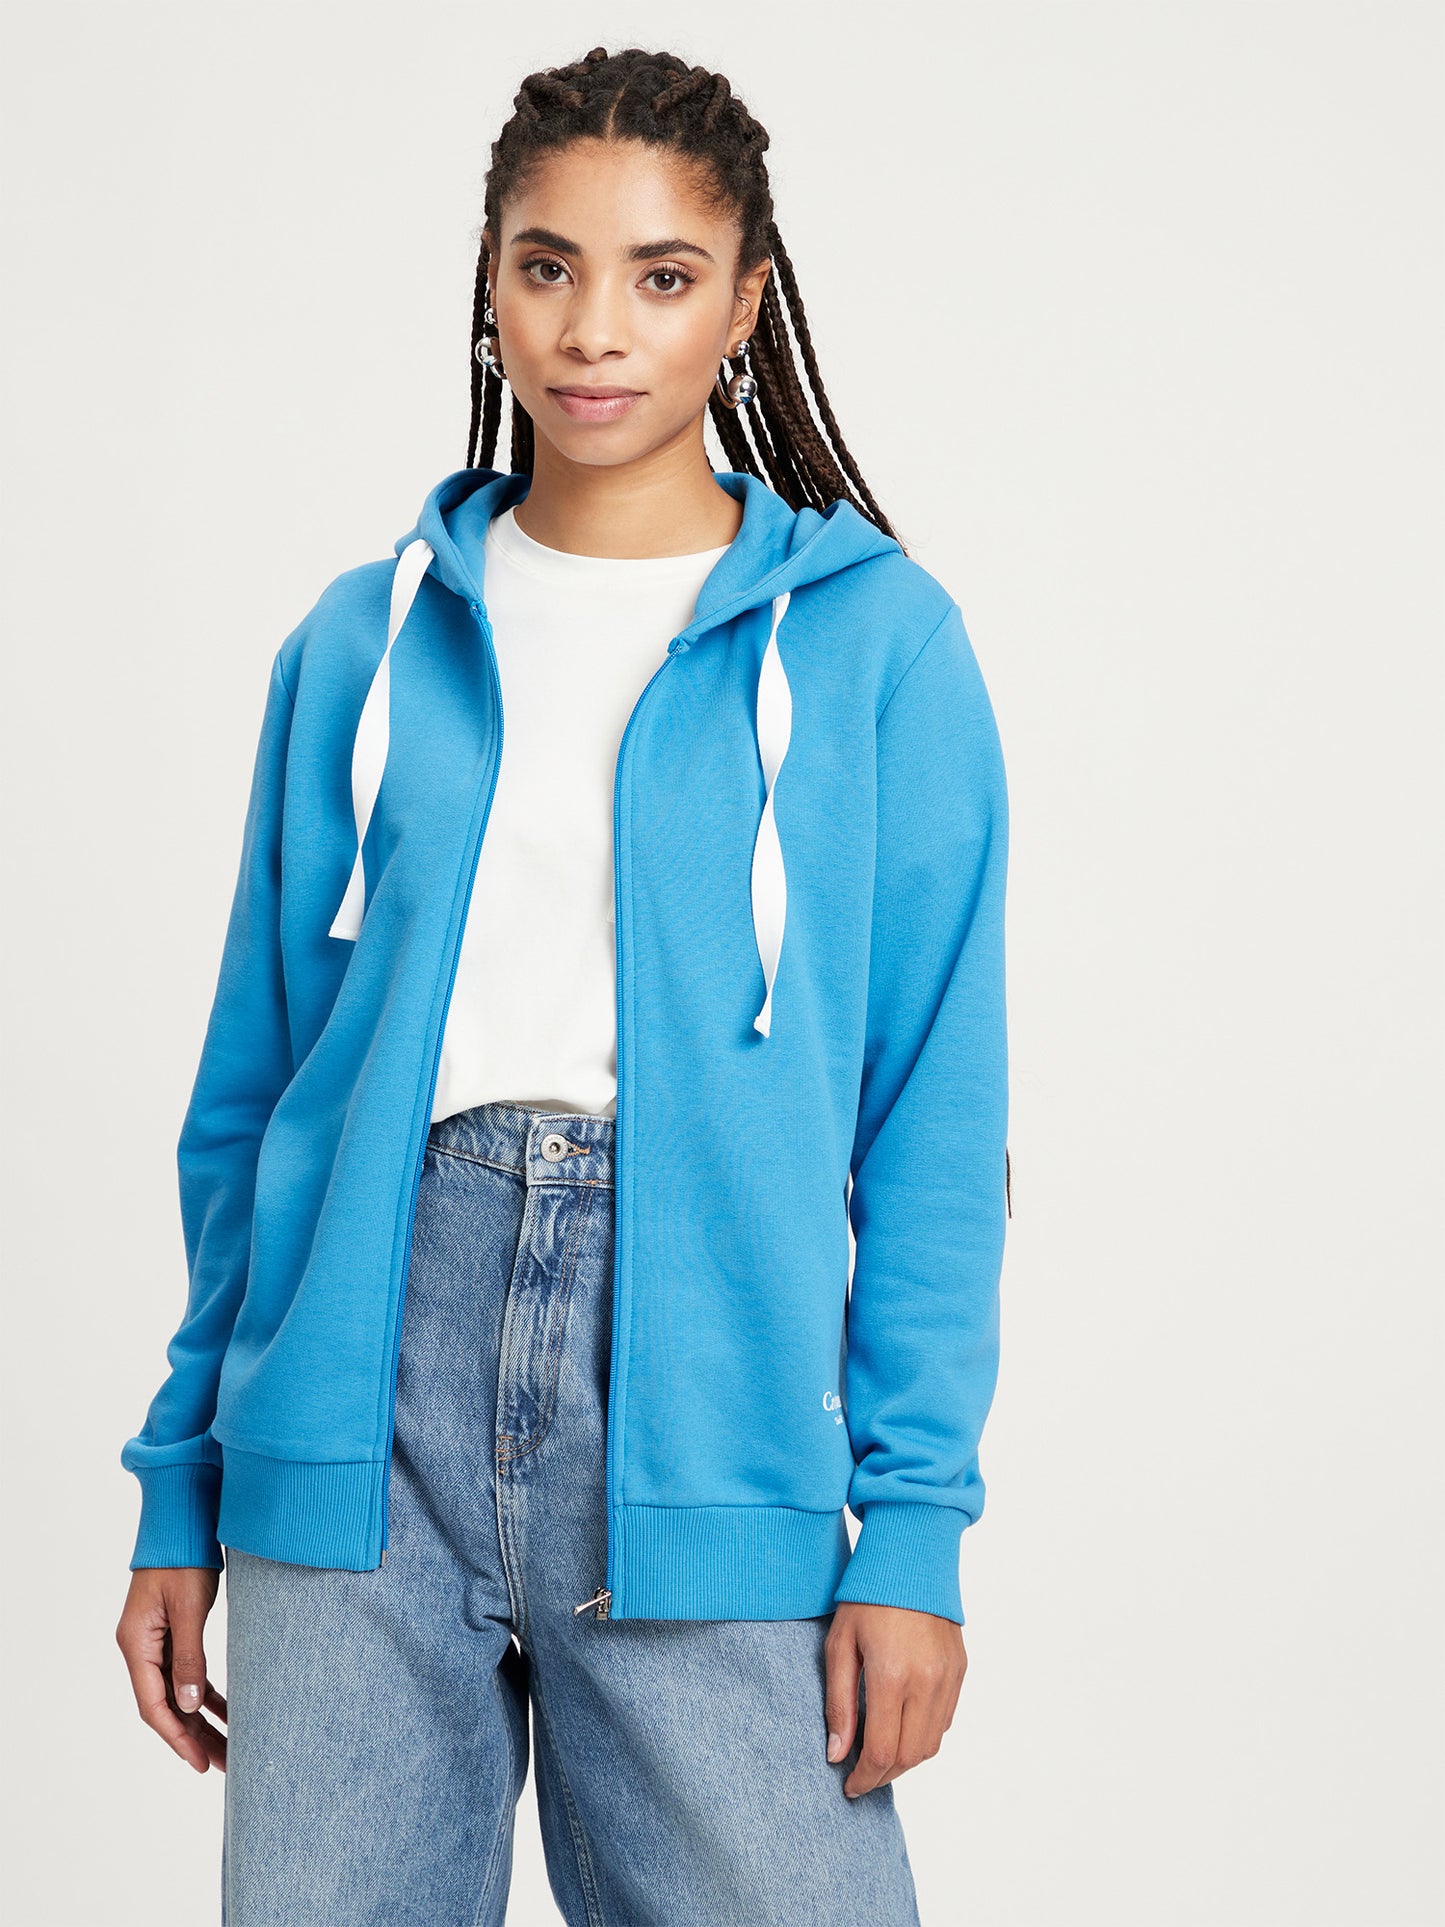 Women's regular sweatshirt with hood and zip, blue.